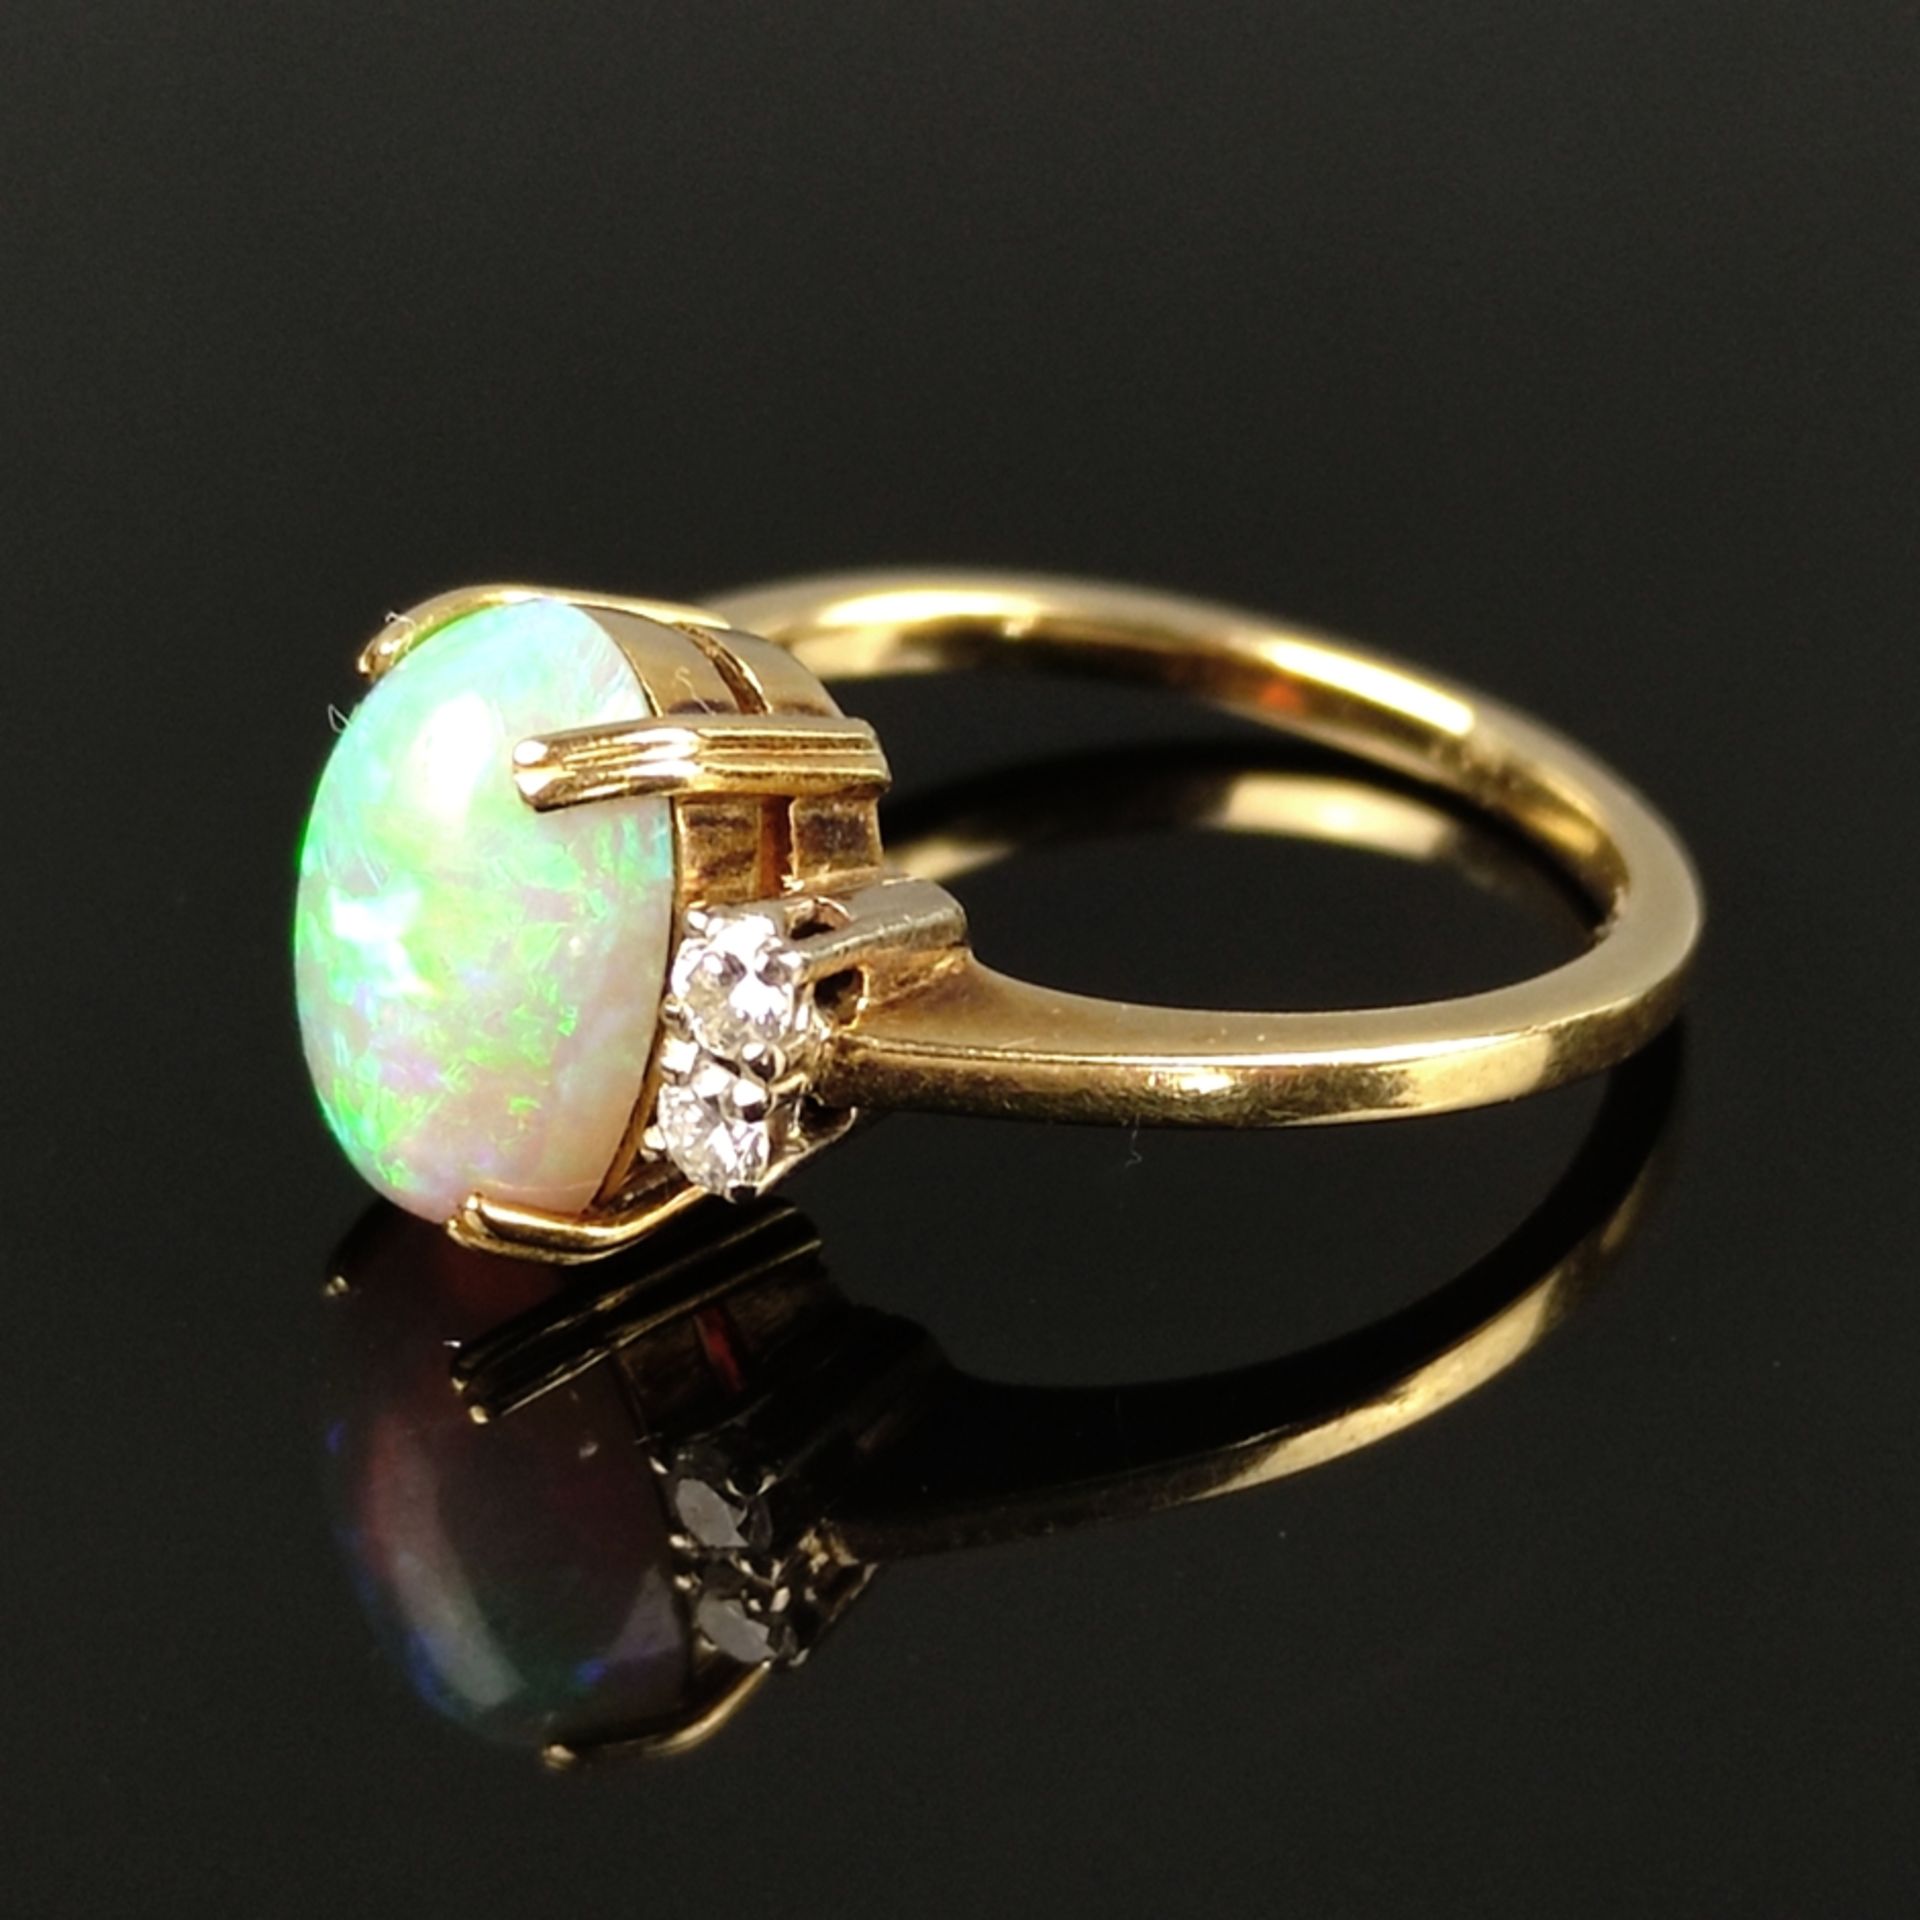 Eleganter Opal-Ring, 585/14K Gelbgold (punziert), 3,95g, mittig Opal-Cabochon (10,5x7x4mm) von inte